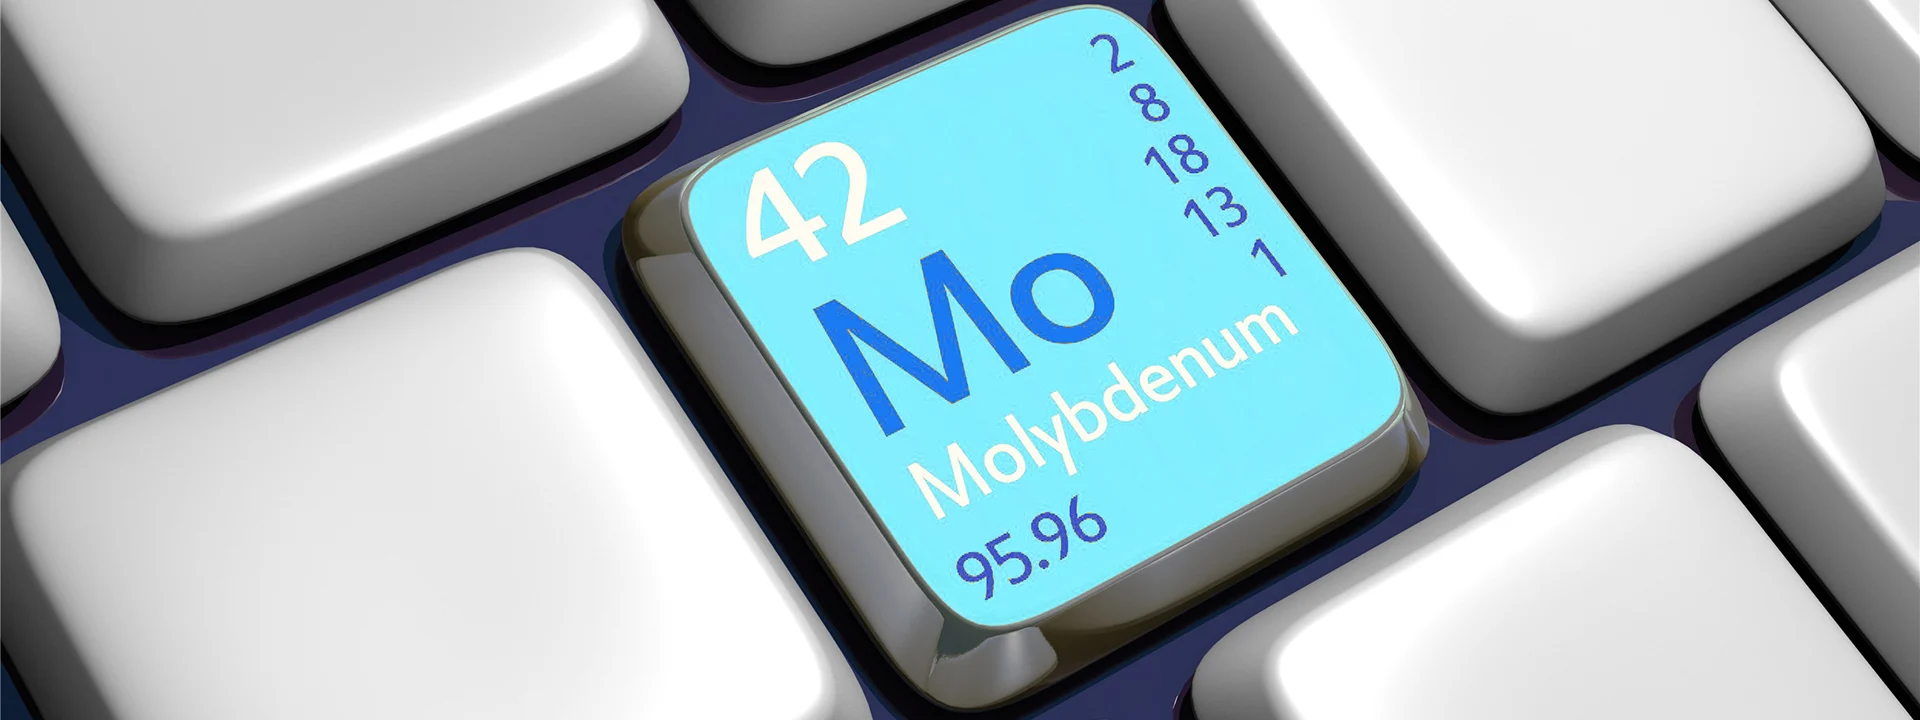 Molybdenum alloy